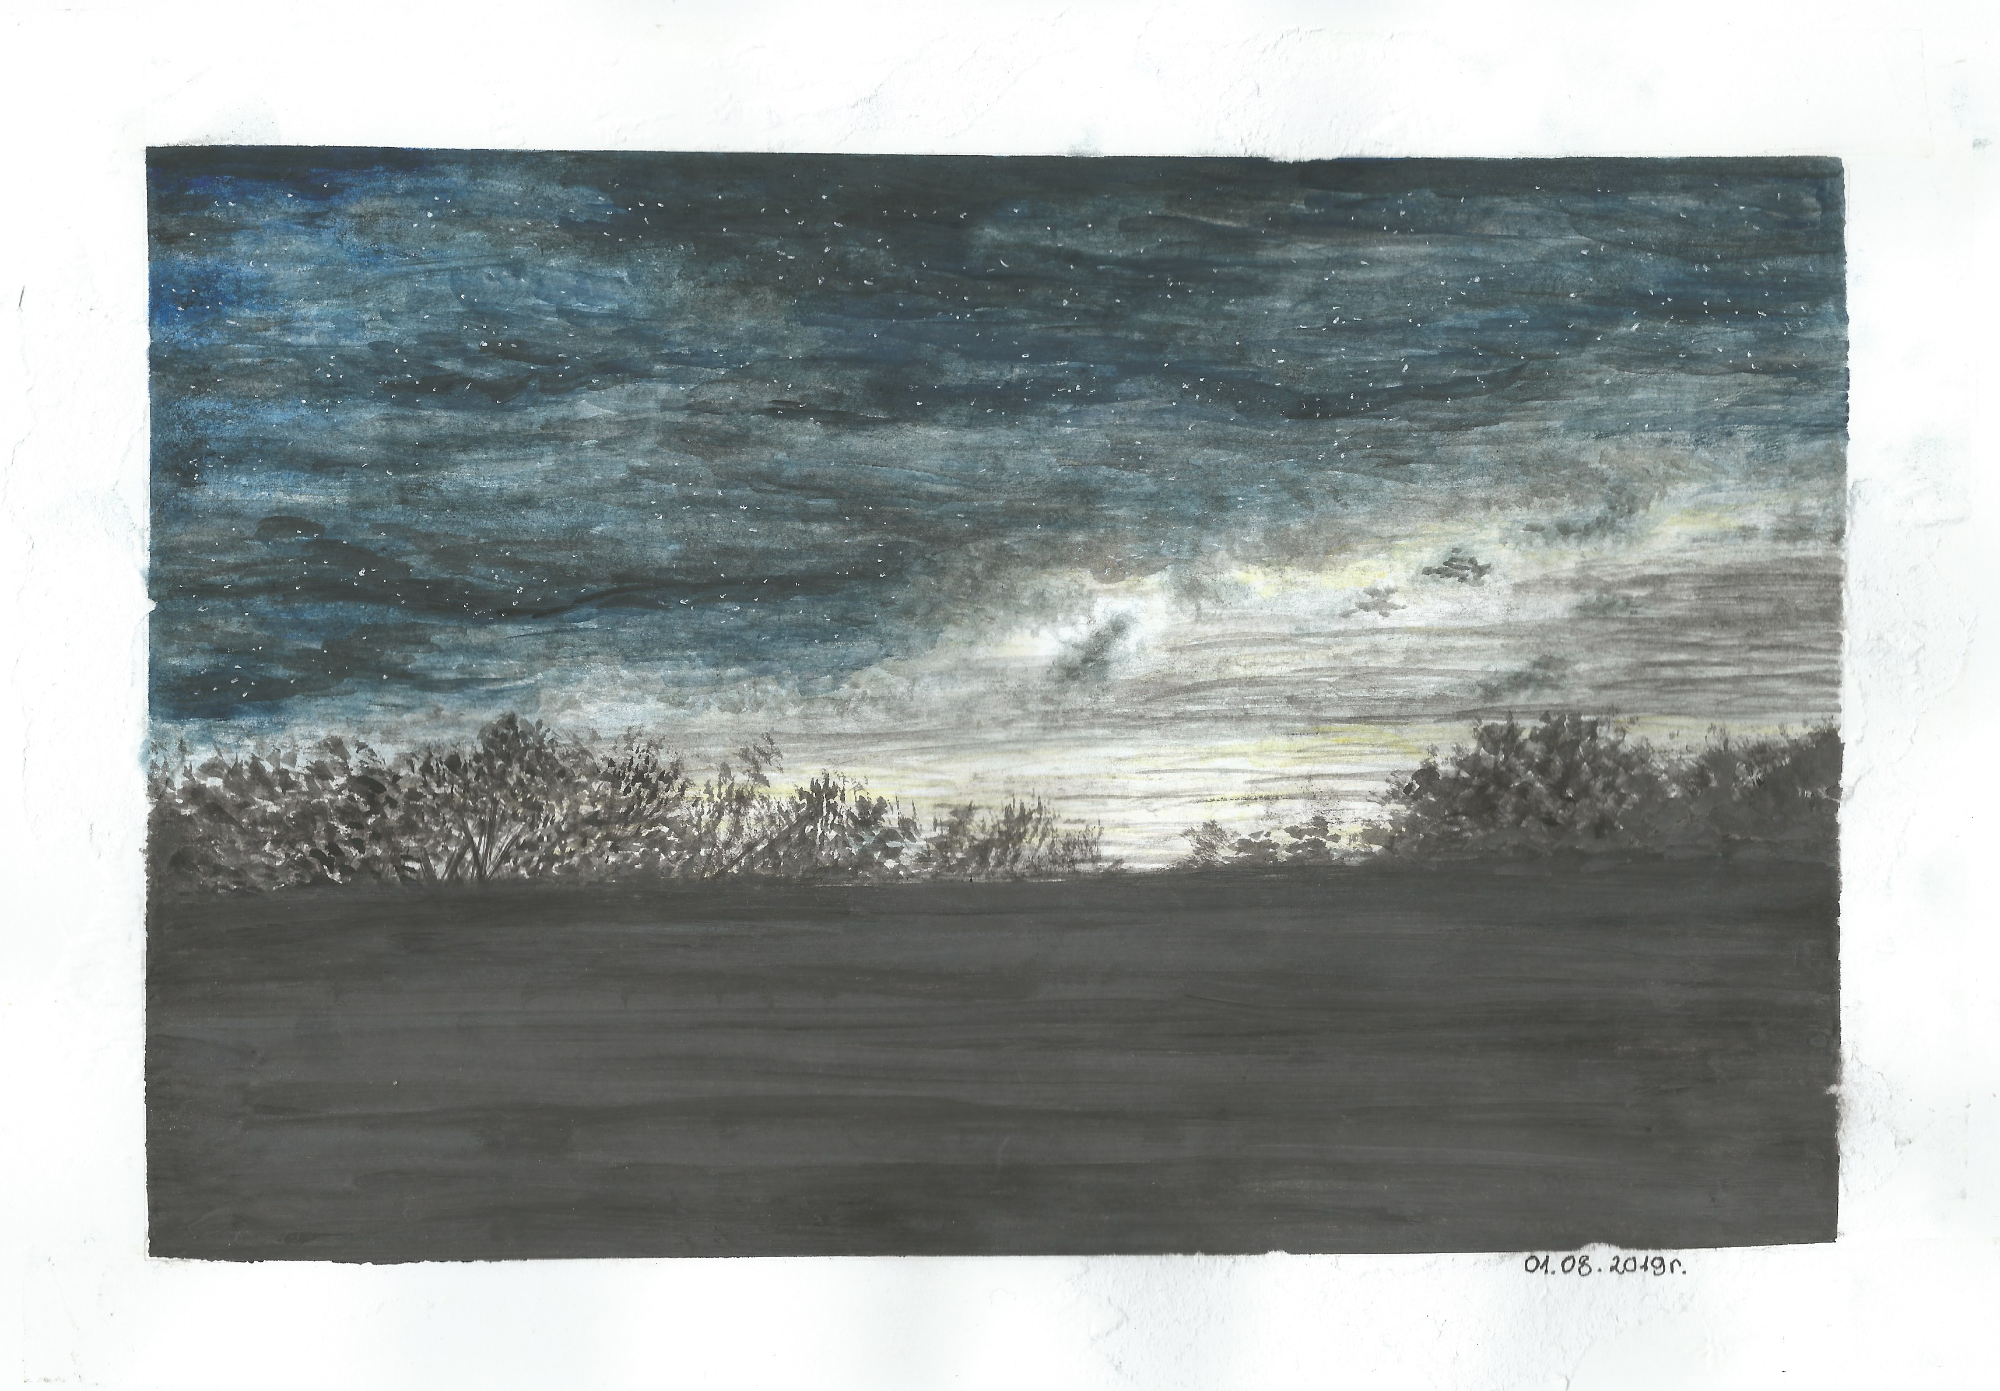 Praca ucznia, tytuł Ukraina, zdjęcie szarego pochmurnego nieba, pola i w oddali drzewa